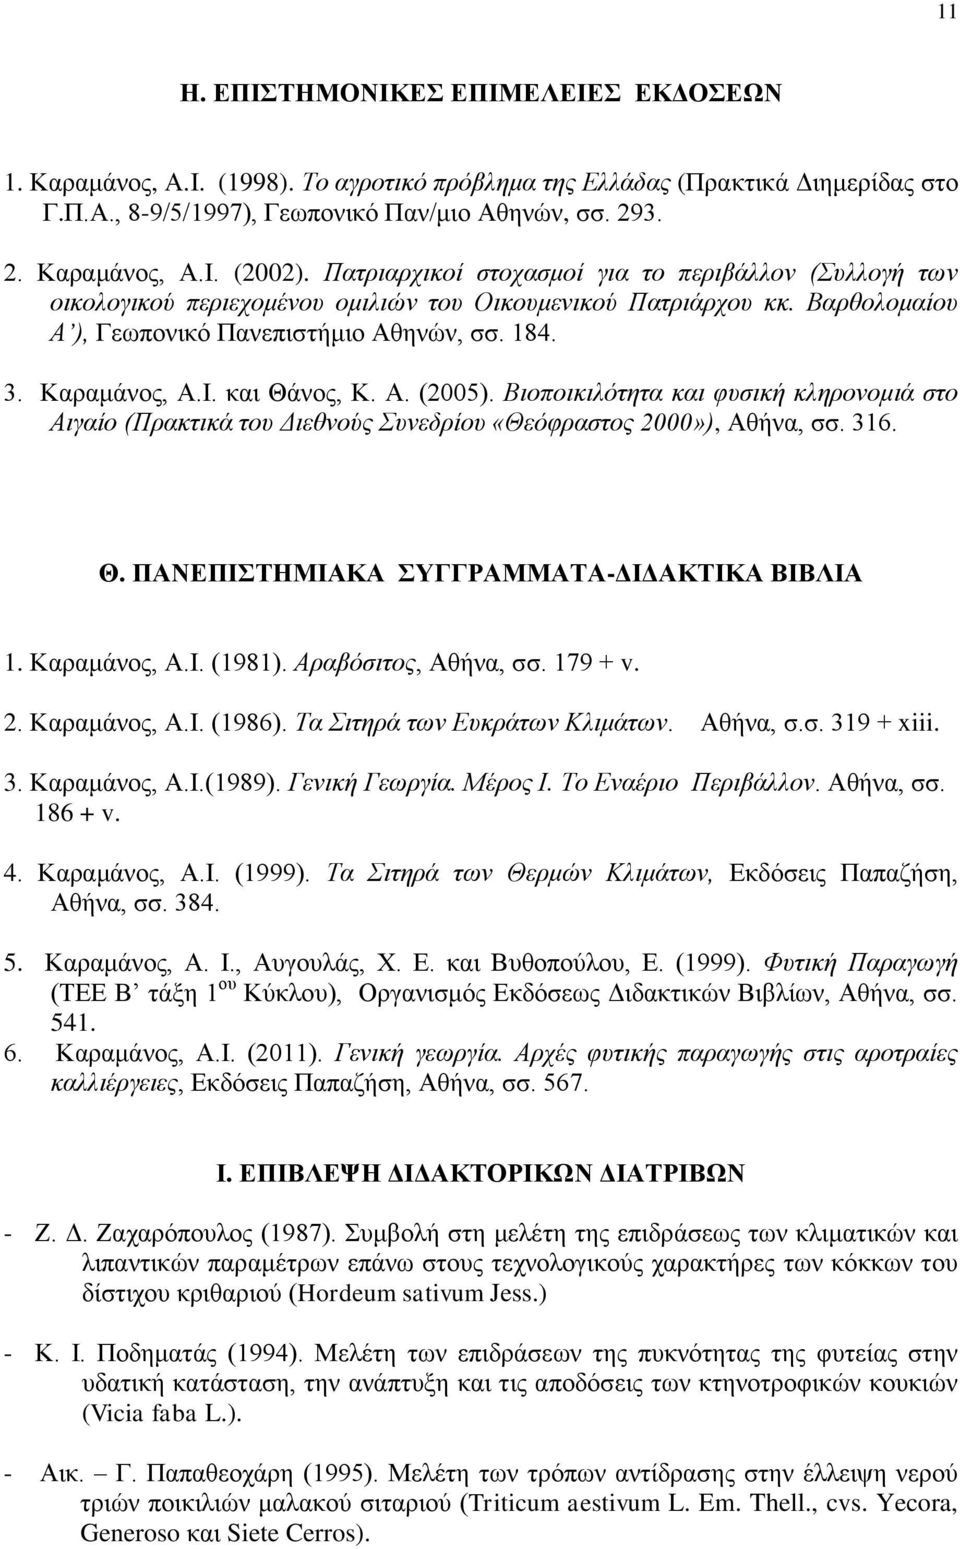 και Θάνος, Κ. Α. (2005). Βιοποικιλότητα και φυσική κληρονομιά στο Αιγαίο (Πρακτικά του Διεθνούς Συνεδρίου «Θεόφραστος 2000»), Αθήνα, σσ. 316. Θ. ΠΑΝΕΠΙΣΤΗΜΙΑΚΑ ΣΥΓΓΡΑΜΜΑΤΑ-ΔΙΔΑΚΤΙΚΑ ΒΙΒΛΙΑ 1.